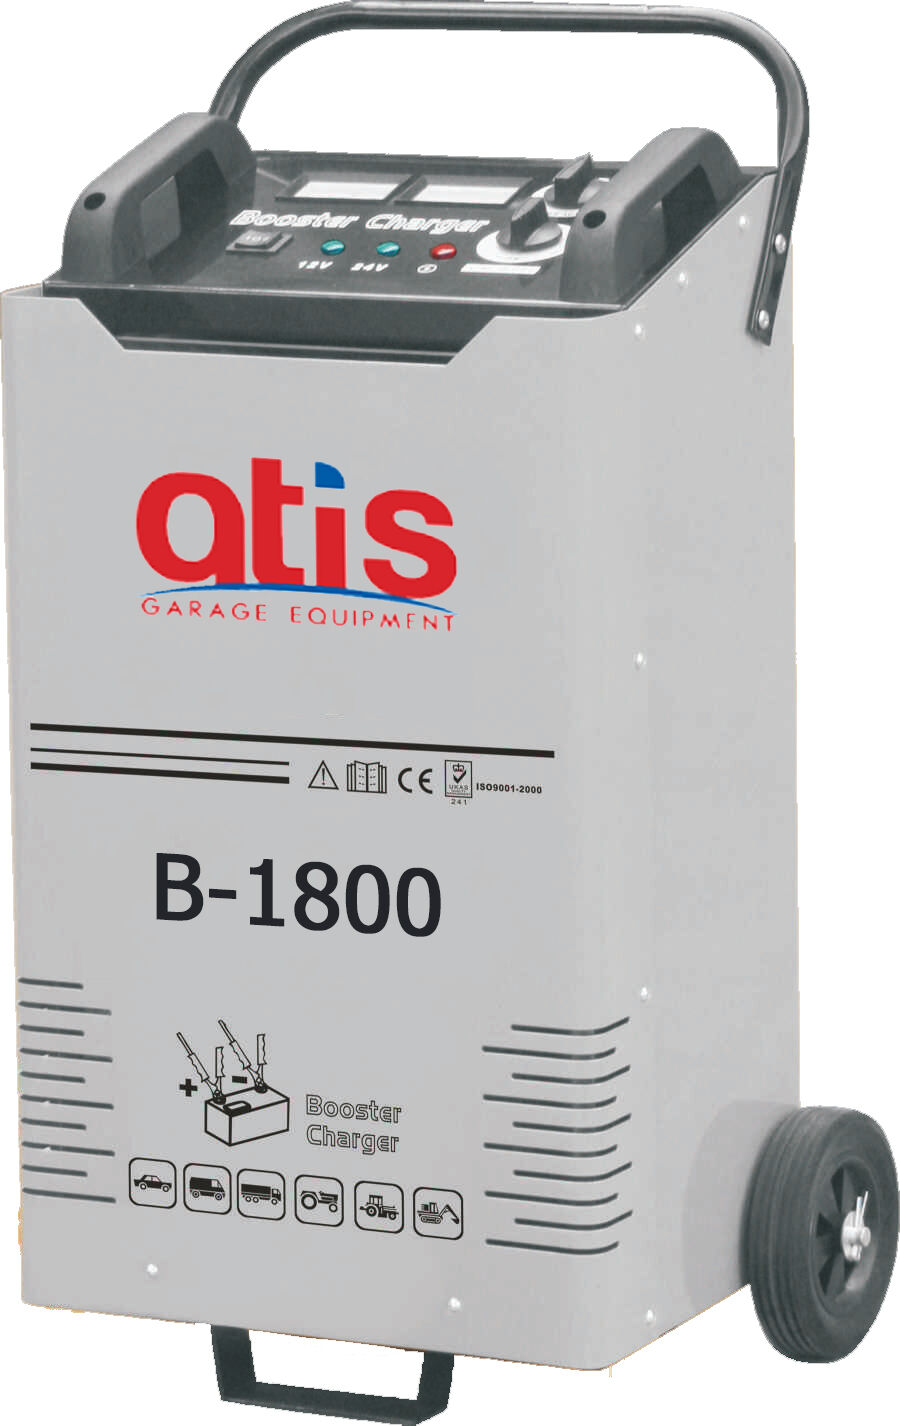 Автоматическое пуско-зарядное устройство B-1800 максимальный стартовый ток 1800А (380В)